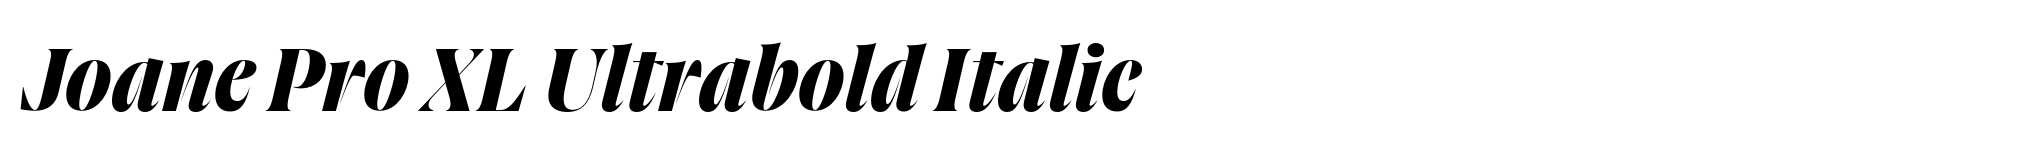 Joane Pro XL Ultrabold Italic image